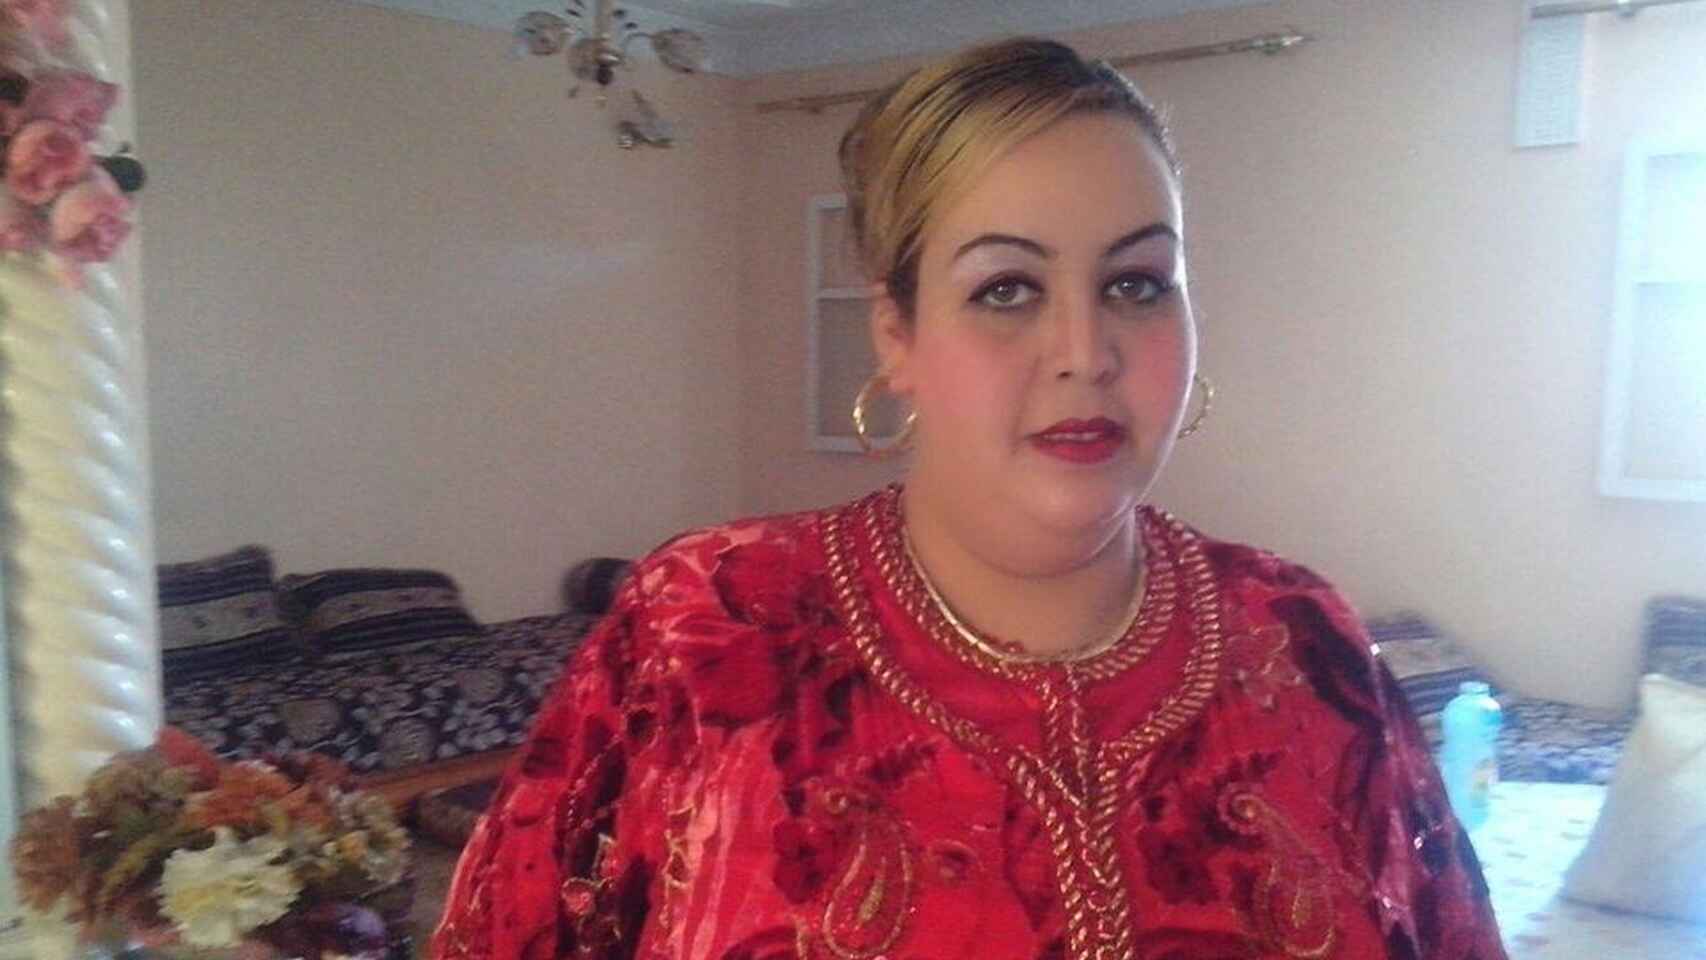 41 años, de nacionalidad marroquí. Asesinada de un disparo de escopeta por su marido, Abdellatif A, de 45 años, y también marroquí. Él no aceptaba que ella se quisiera divorciar, acababa de cumplir condena por narcotráfico y el día del crimen telefoneó al trabajo de su esposa (ella era chef) para comunicar que se encontraba indispuesta y no podía ir. Uno de los hijos encontró el cadáver de su madre y alertó a la Policía Local. El acusado fue localizado y arrestado después tras haber huido en un turismo del domicilio familiar. No constaban denuncias previas. 